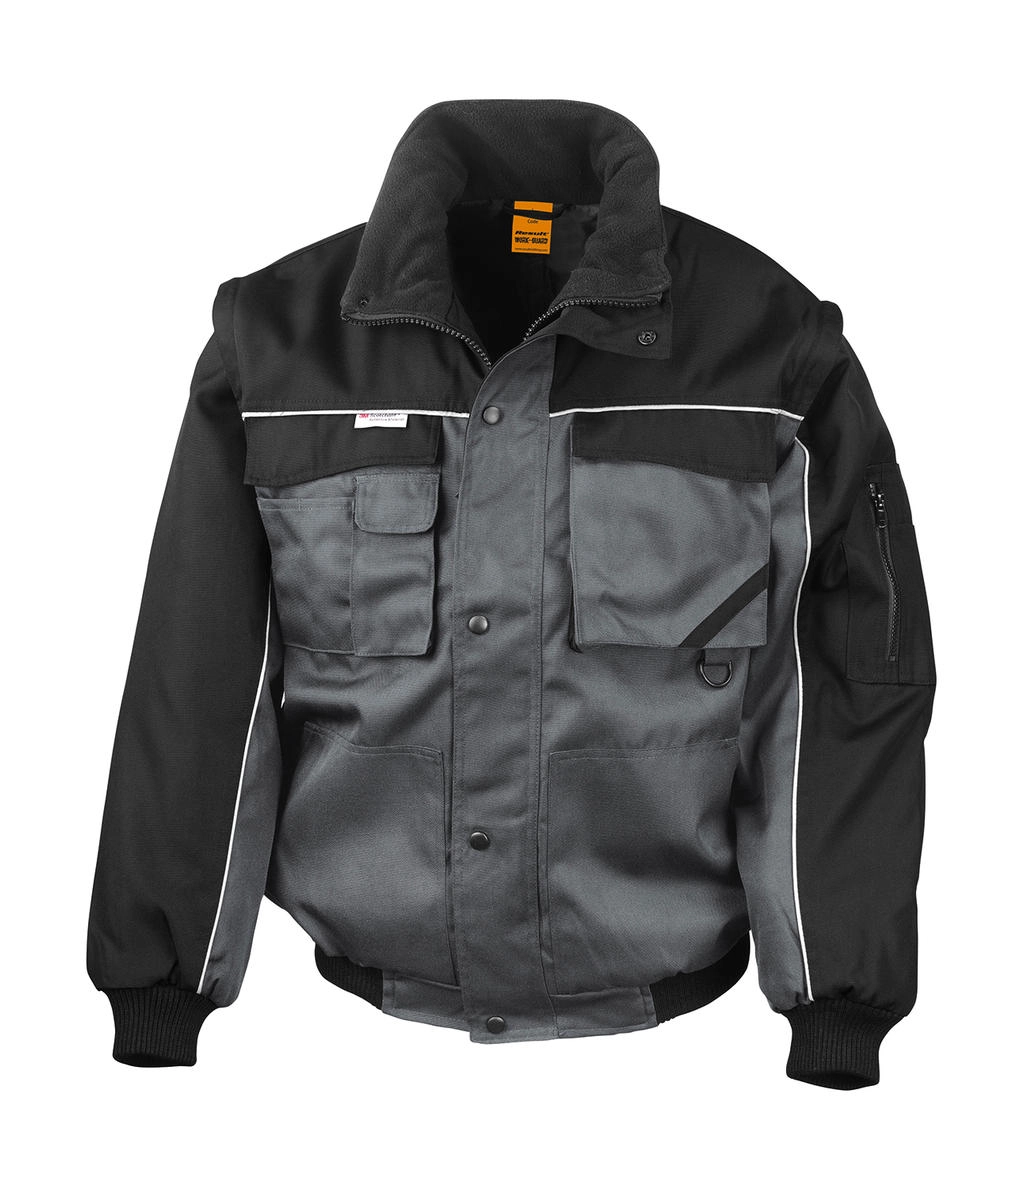 Heavy Duty Jacket zum Besticken und Bedrucken in der Farbe Grey/Black mit Ihren Logo, Schriftzug oder Motiv.